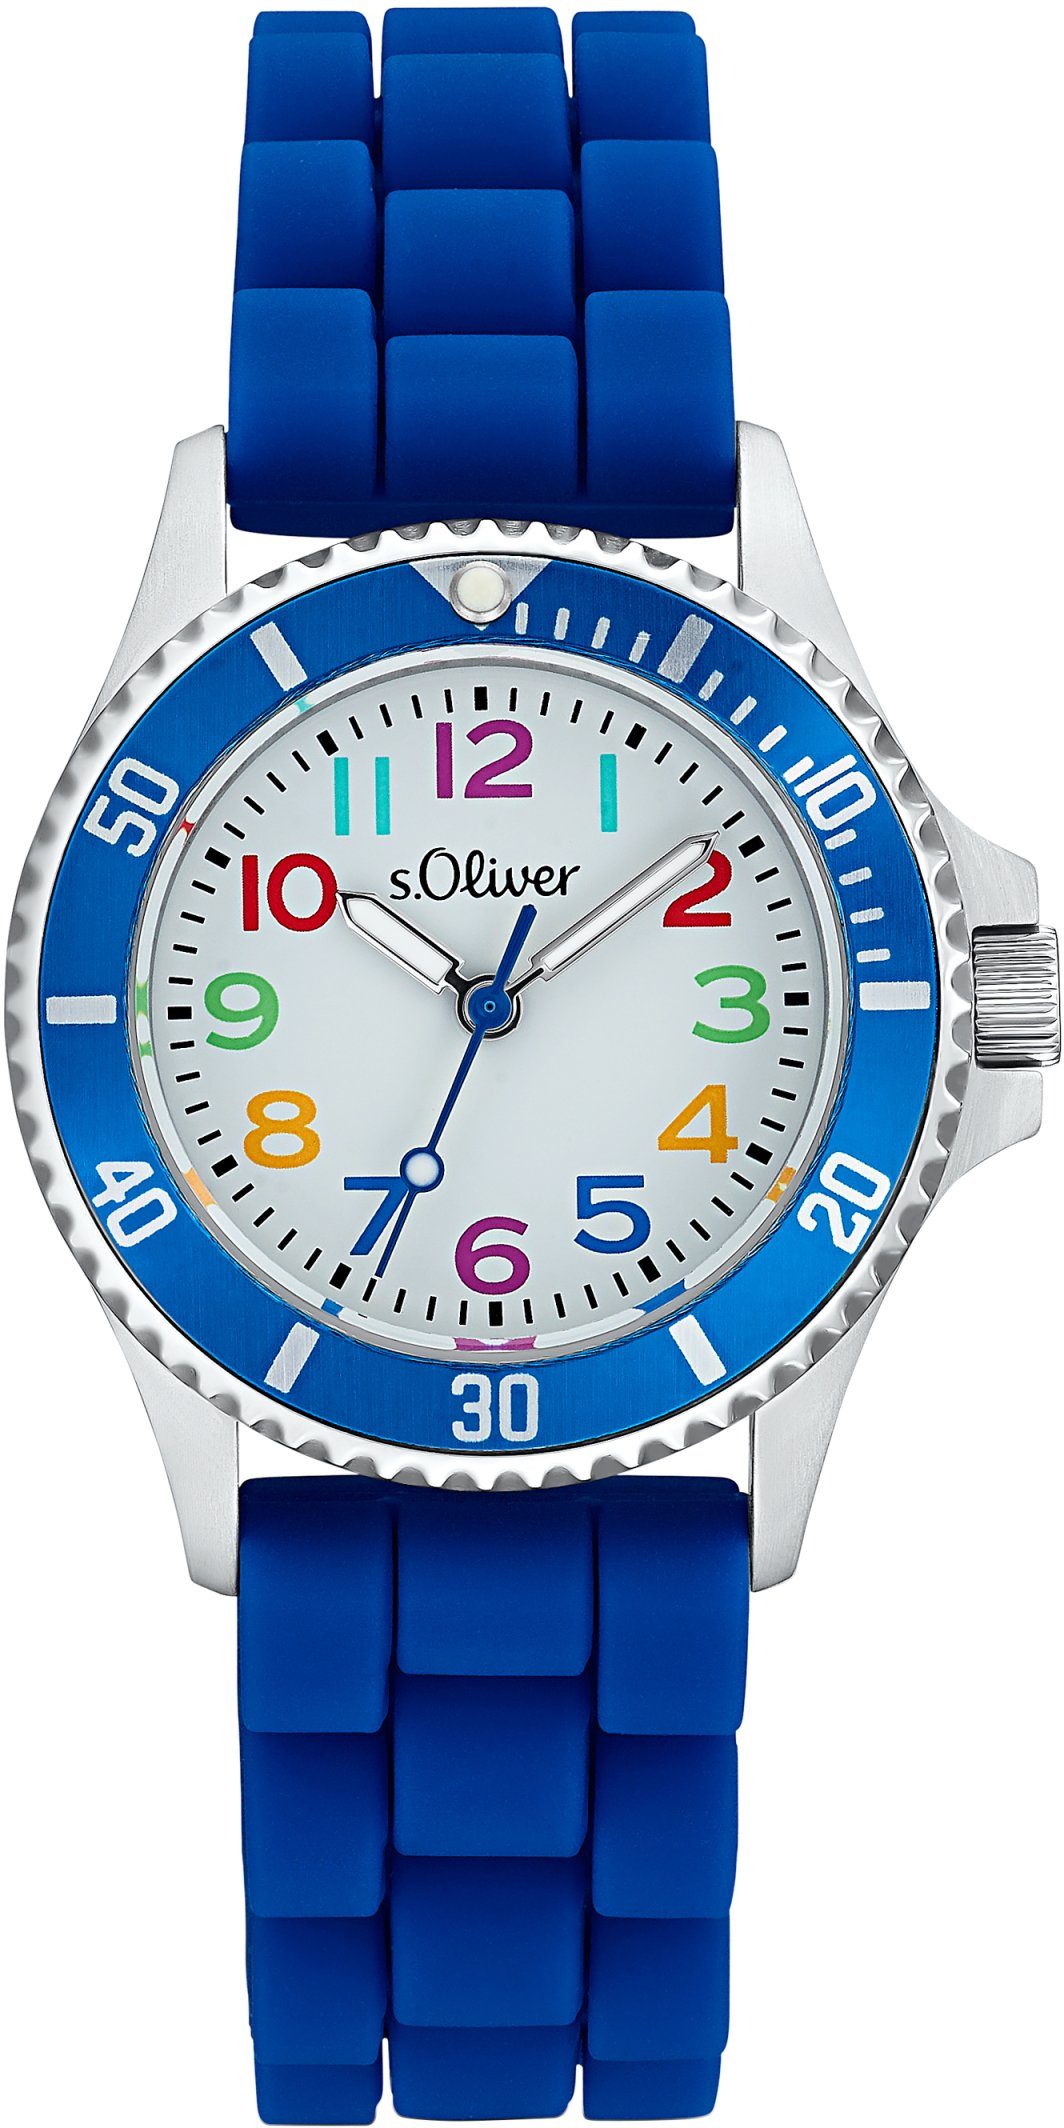 s.Oliver Quarzuhr 2033504, Armbanduhr, Kinderuhr, ideal auch als Geschenk